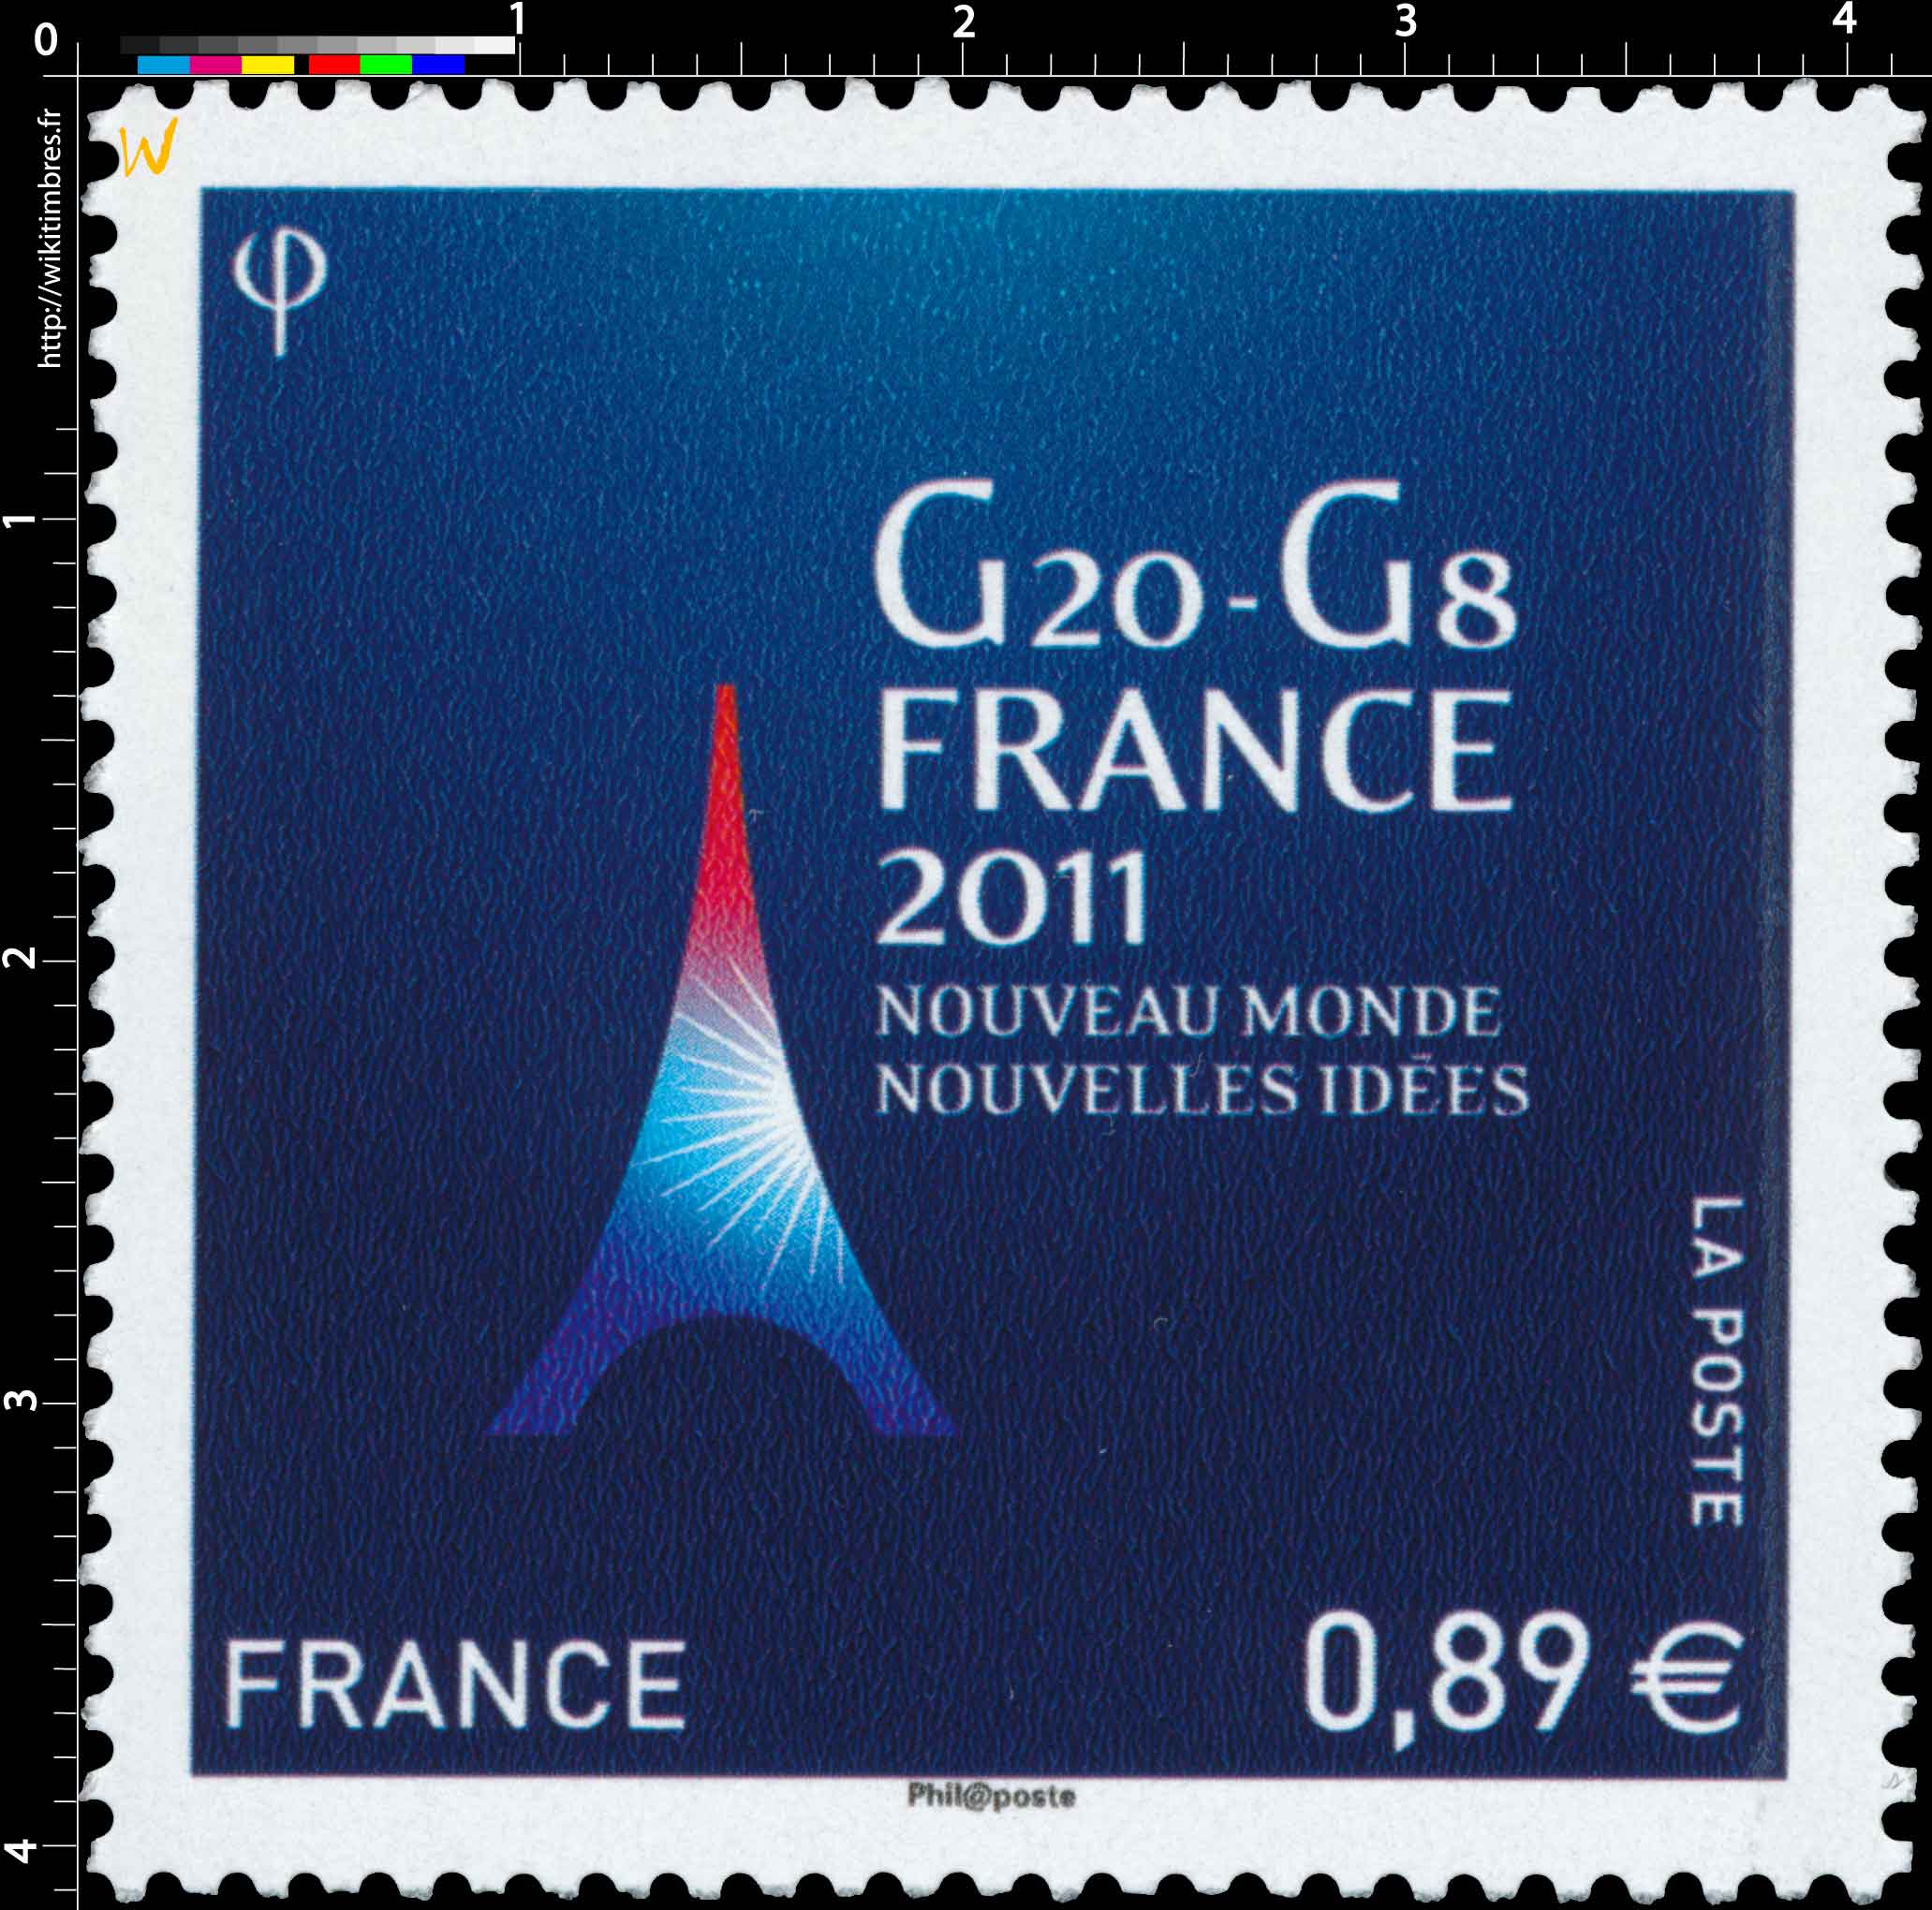 2011 G20 - G8 France 2011 Nouveau monde Nouvelles idées